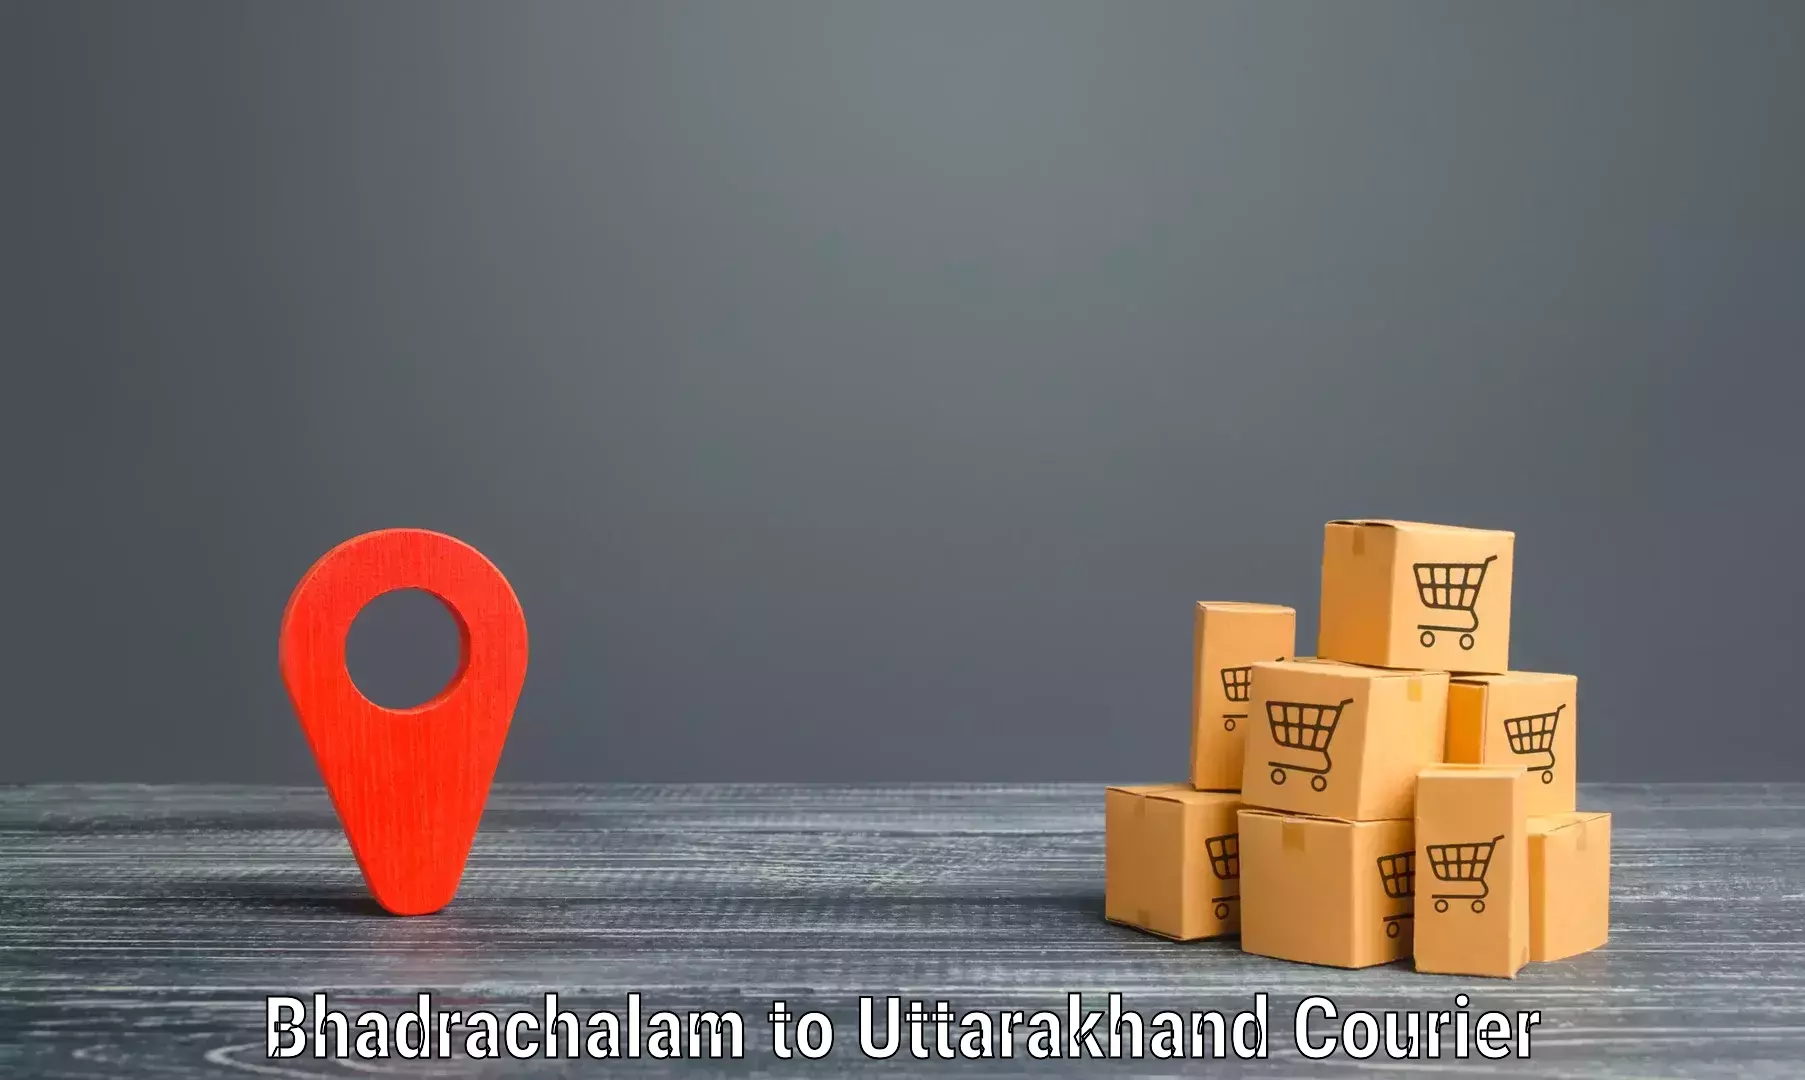 Efficient cargo handling Bhadrachalam to Pithoragarh